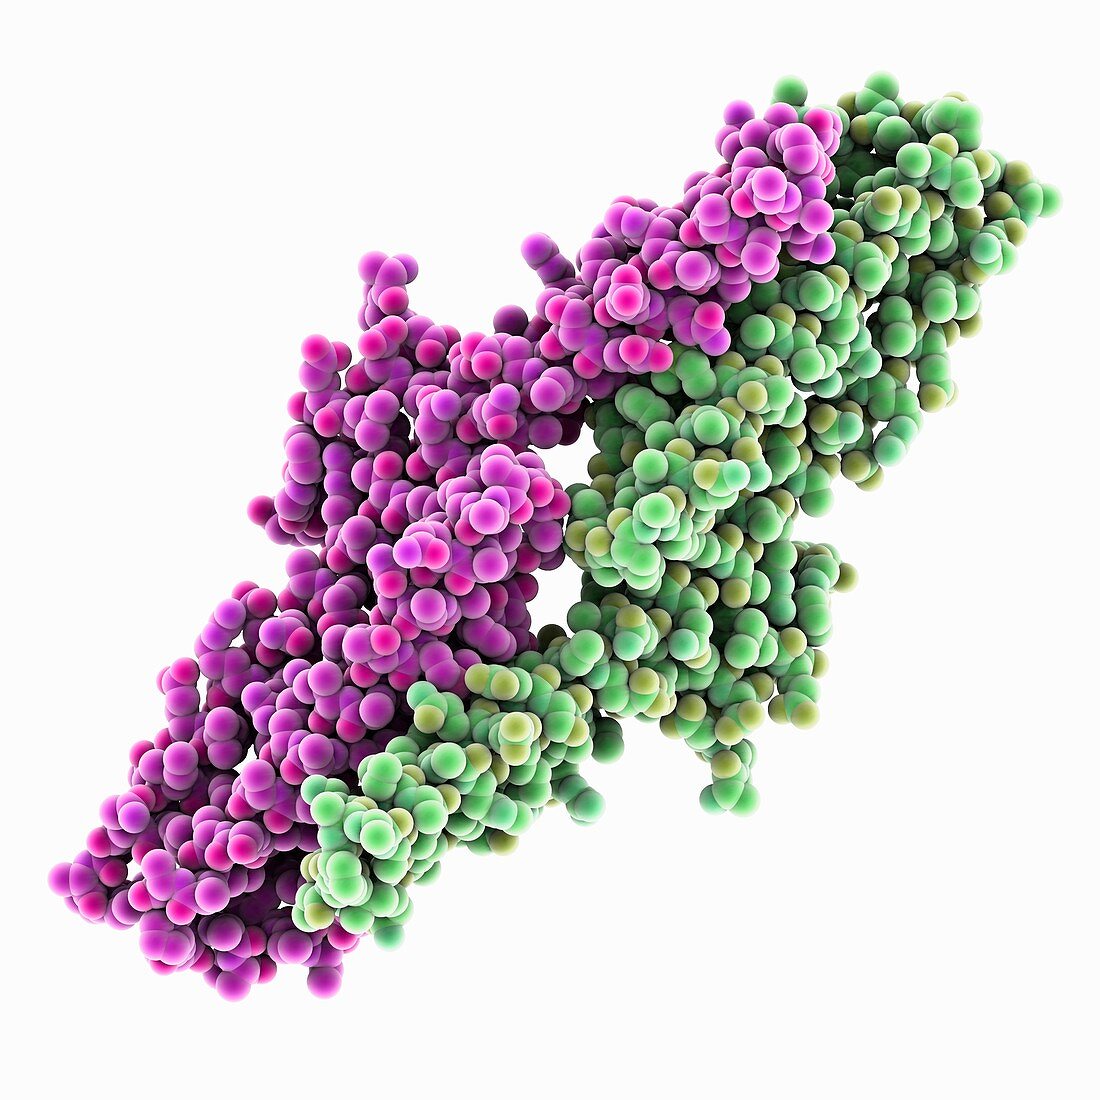 Amyloid precursor protein E2 domain